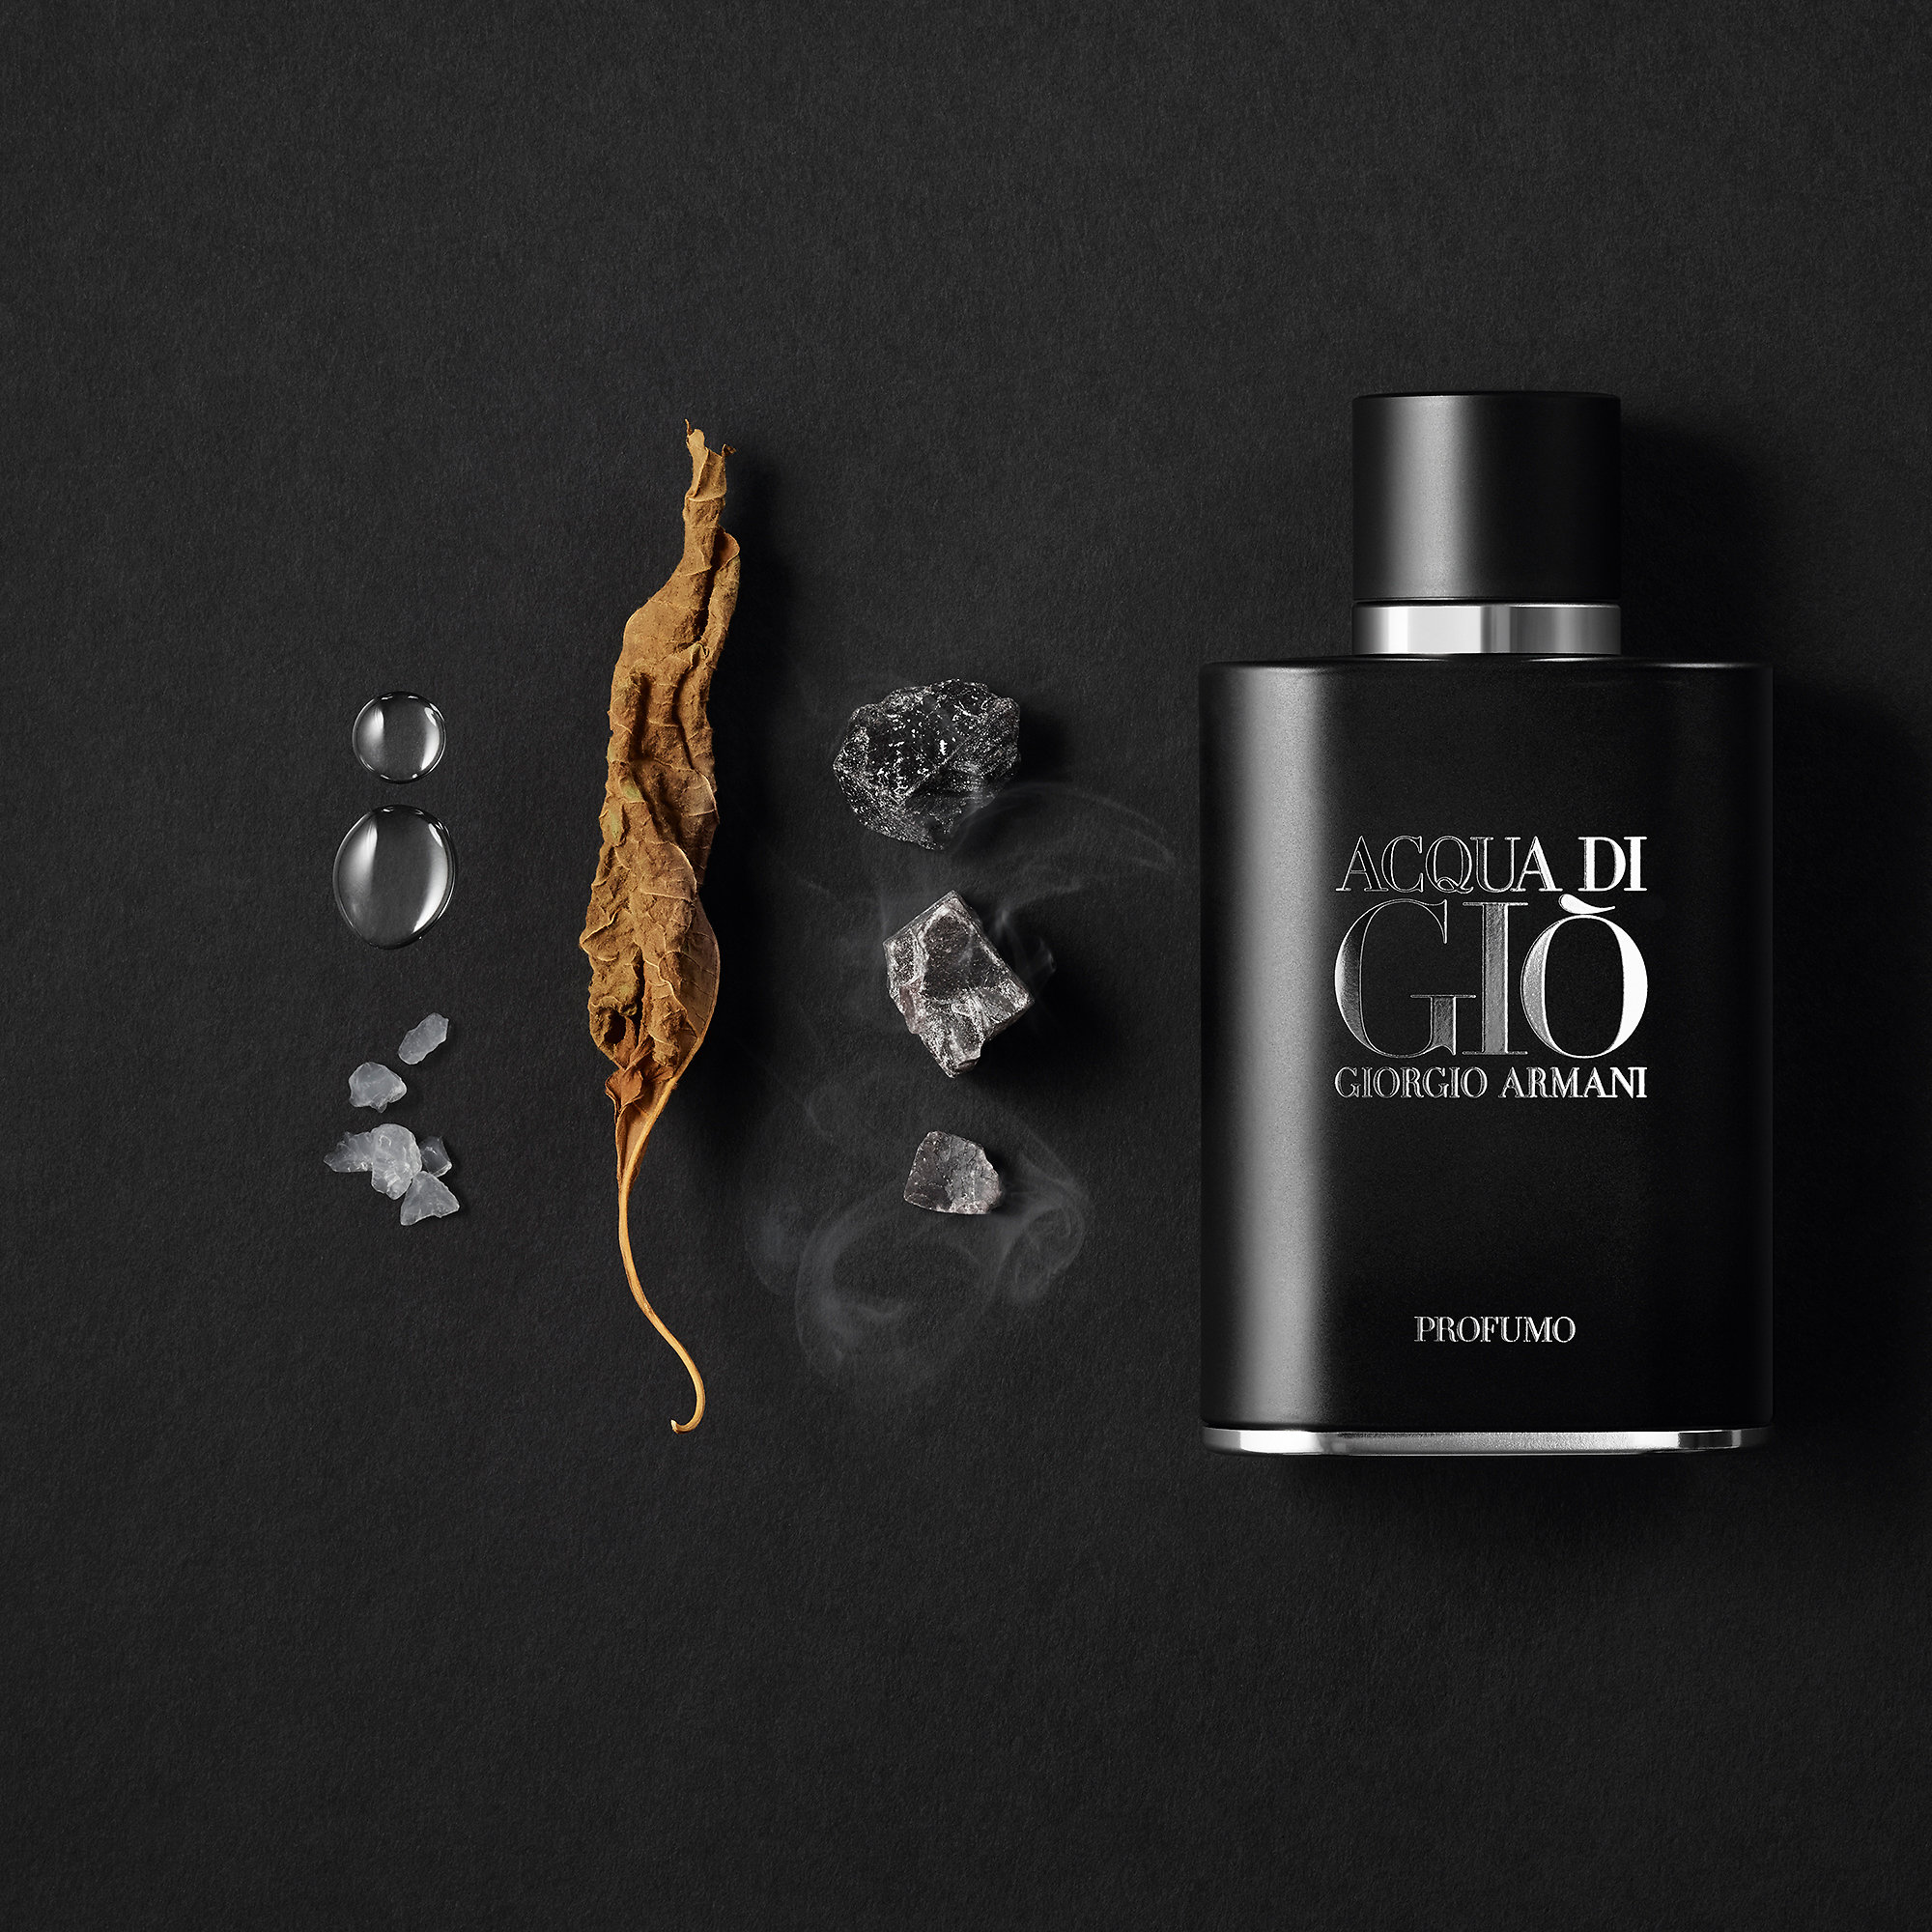 Giorgio Armani Acqua Di Gio PROFUMO Parfum EDP 5ml น้ำหอมผู้ชายที่ได้รับแรงบันดาลใจ จากเกาะภูเขาไฟ กลิ่นหอมระหว่างความเข้มข้นหนักแน่นของภูเขาไฟกับความสดชื่นจากทะเลที่ลุ่มลึก